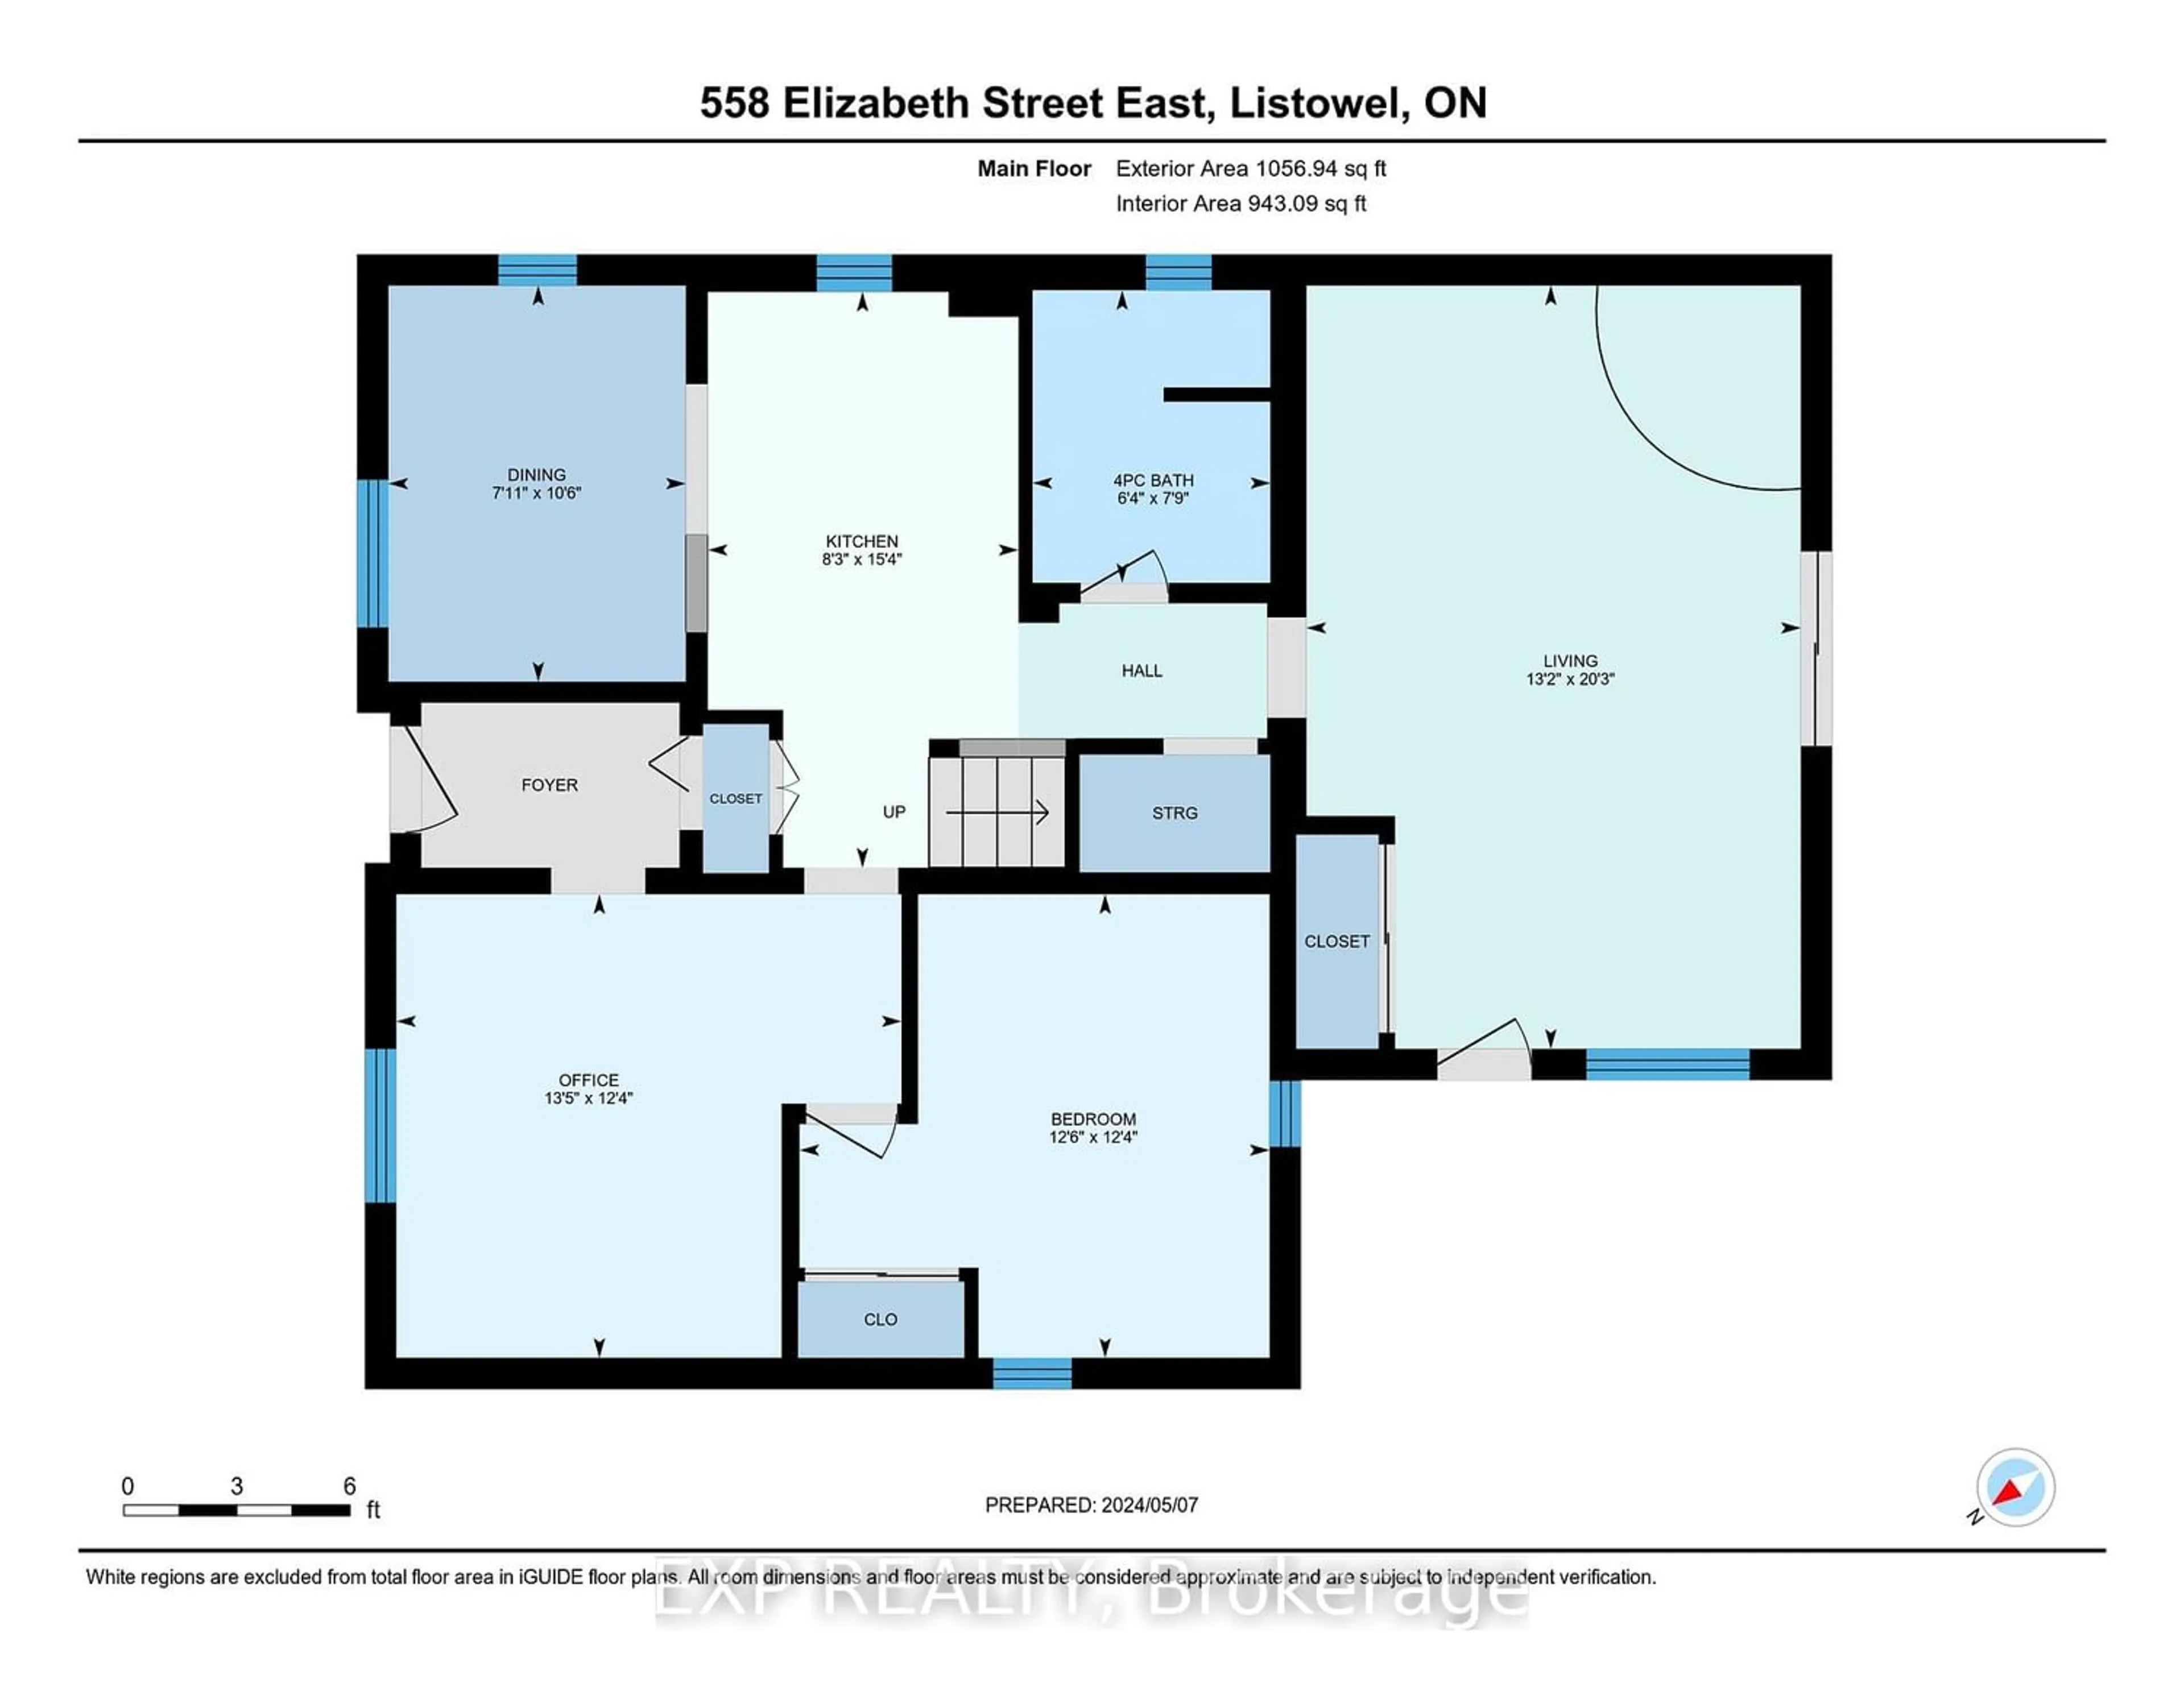 Floor plan for 558 Elizabeth St, North Perth Ontario N4W 2R2